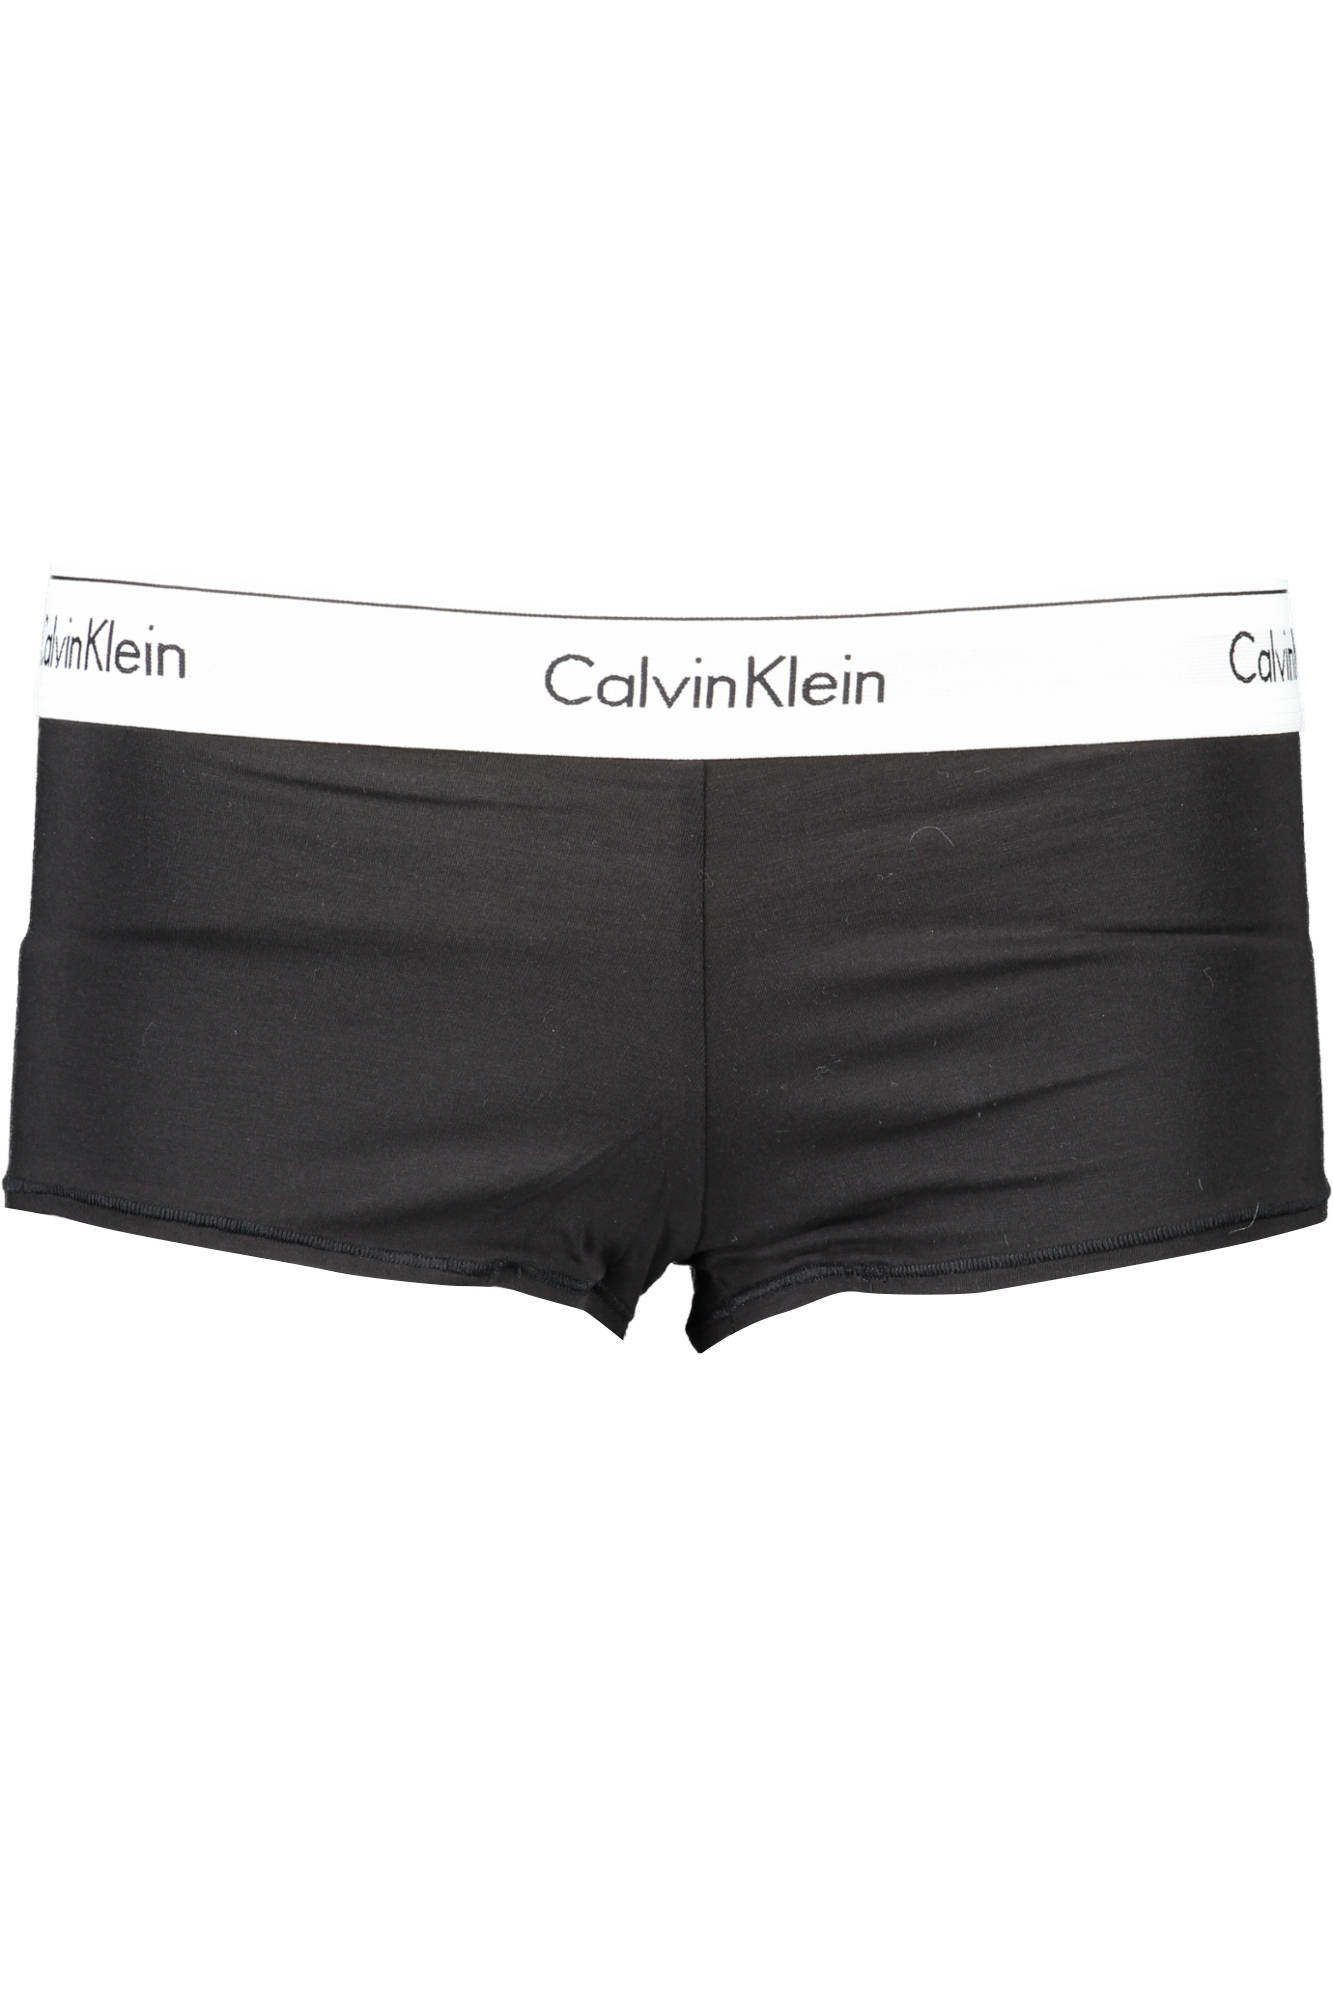 Spodní prádlo CALVIN KLEIN kalhotky NERO